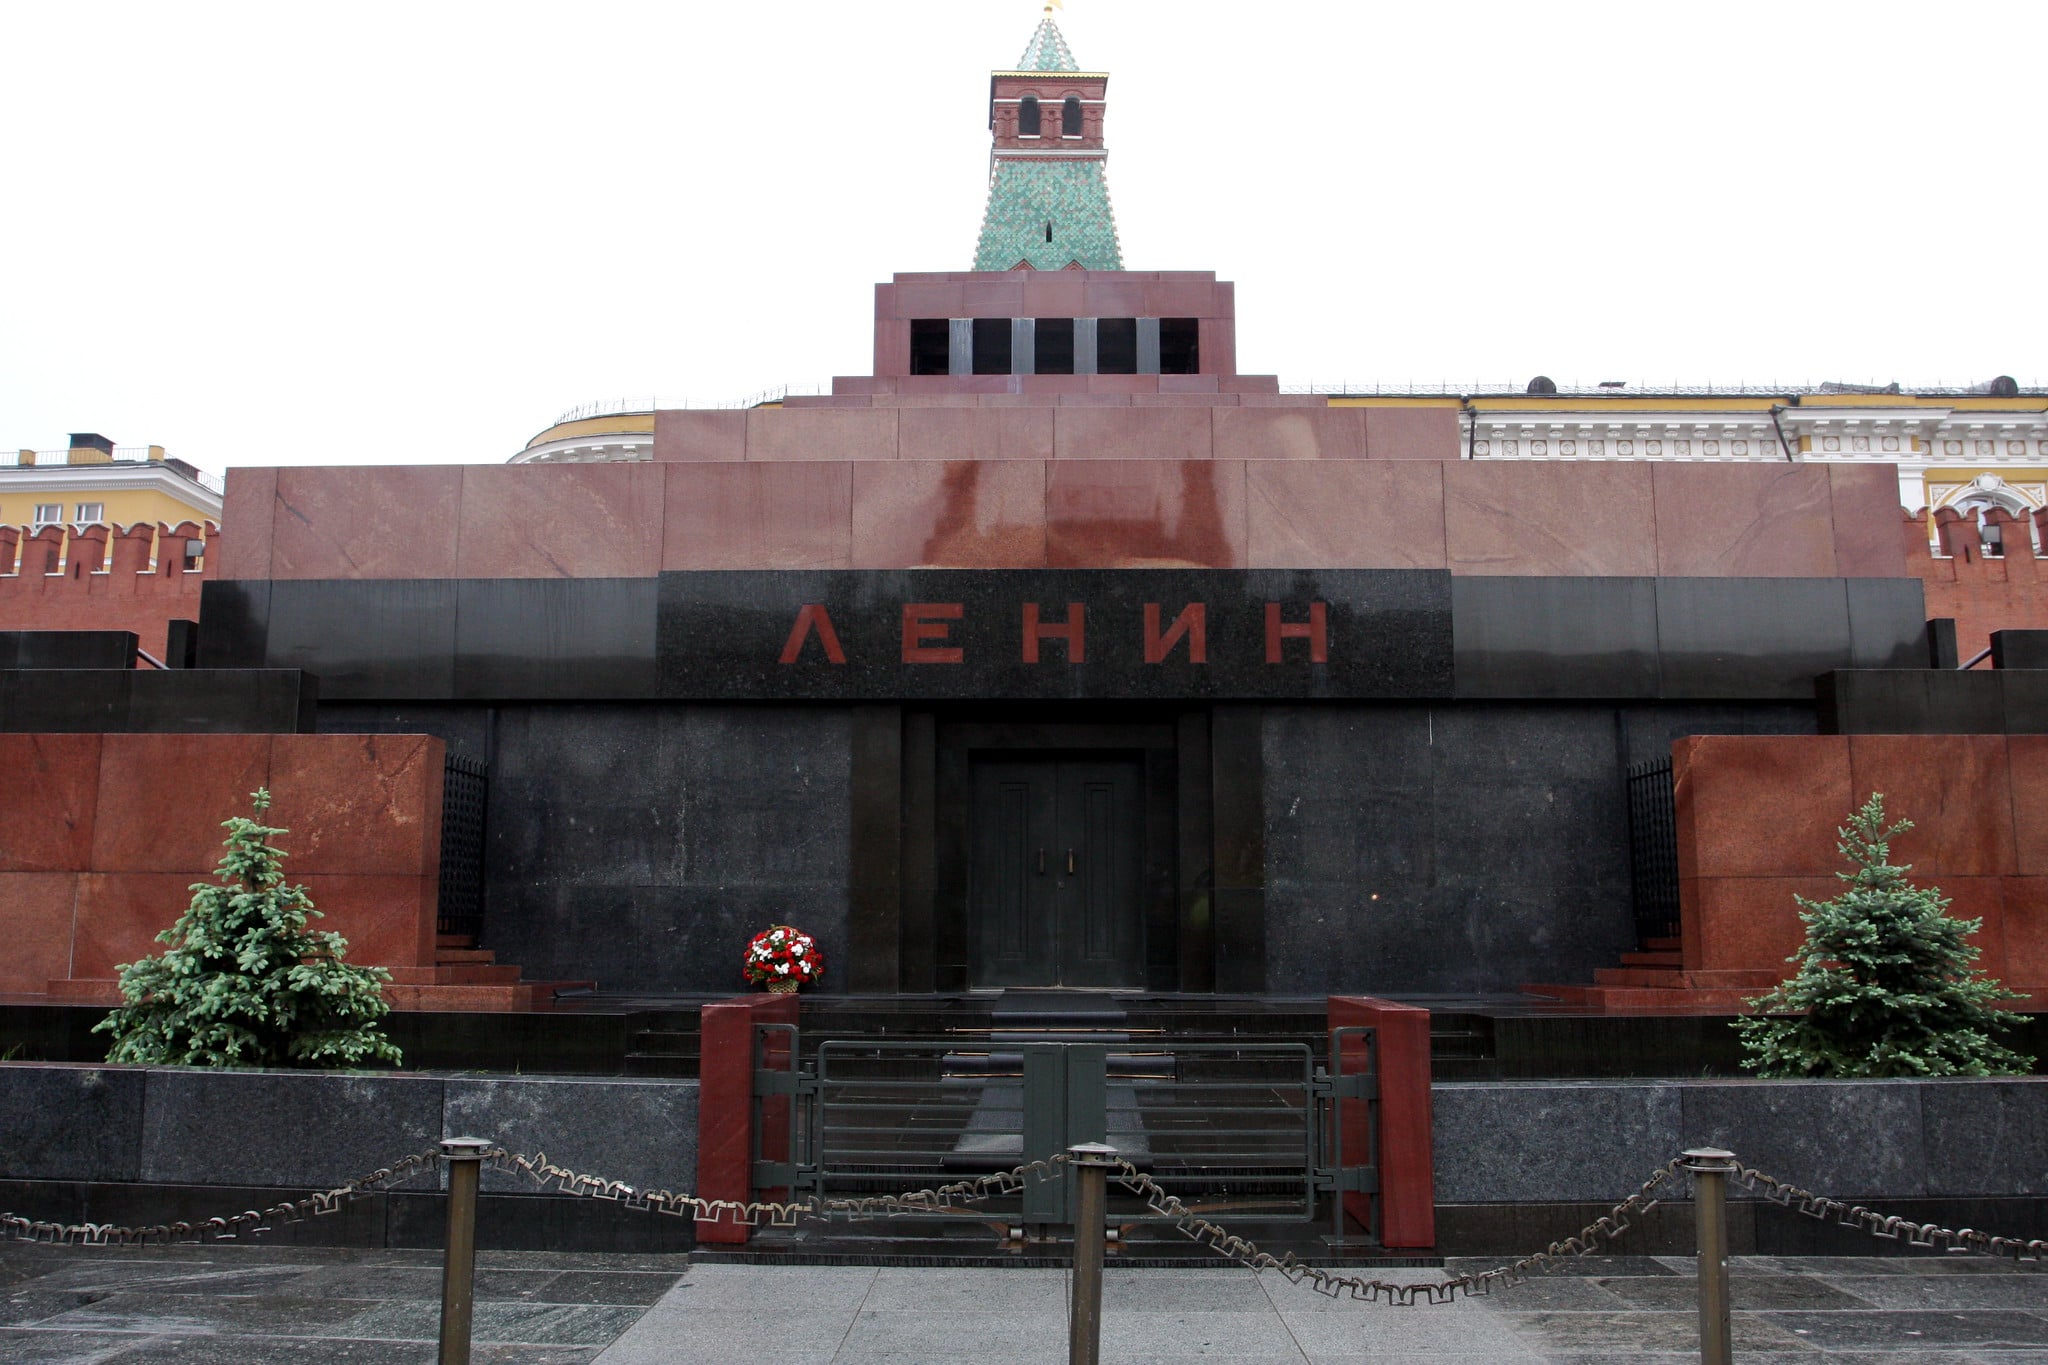 Ленин Владимир Ильич в мавзолее